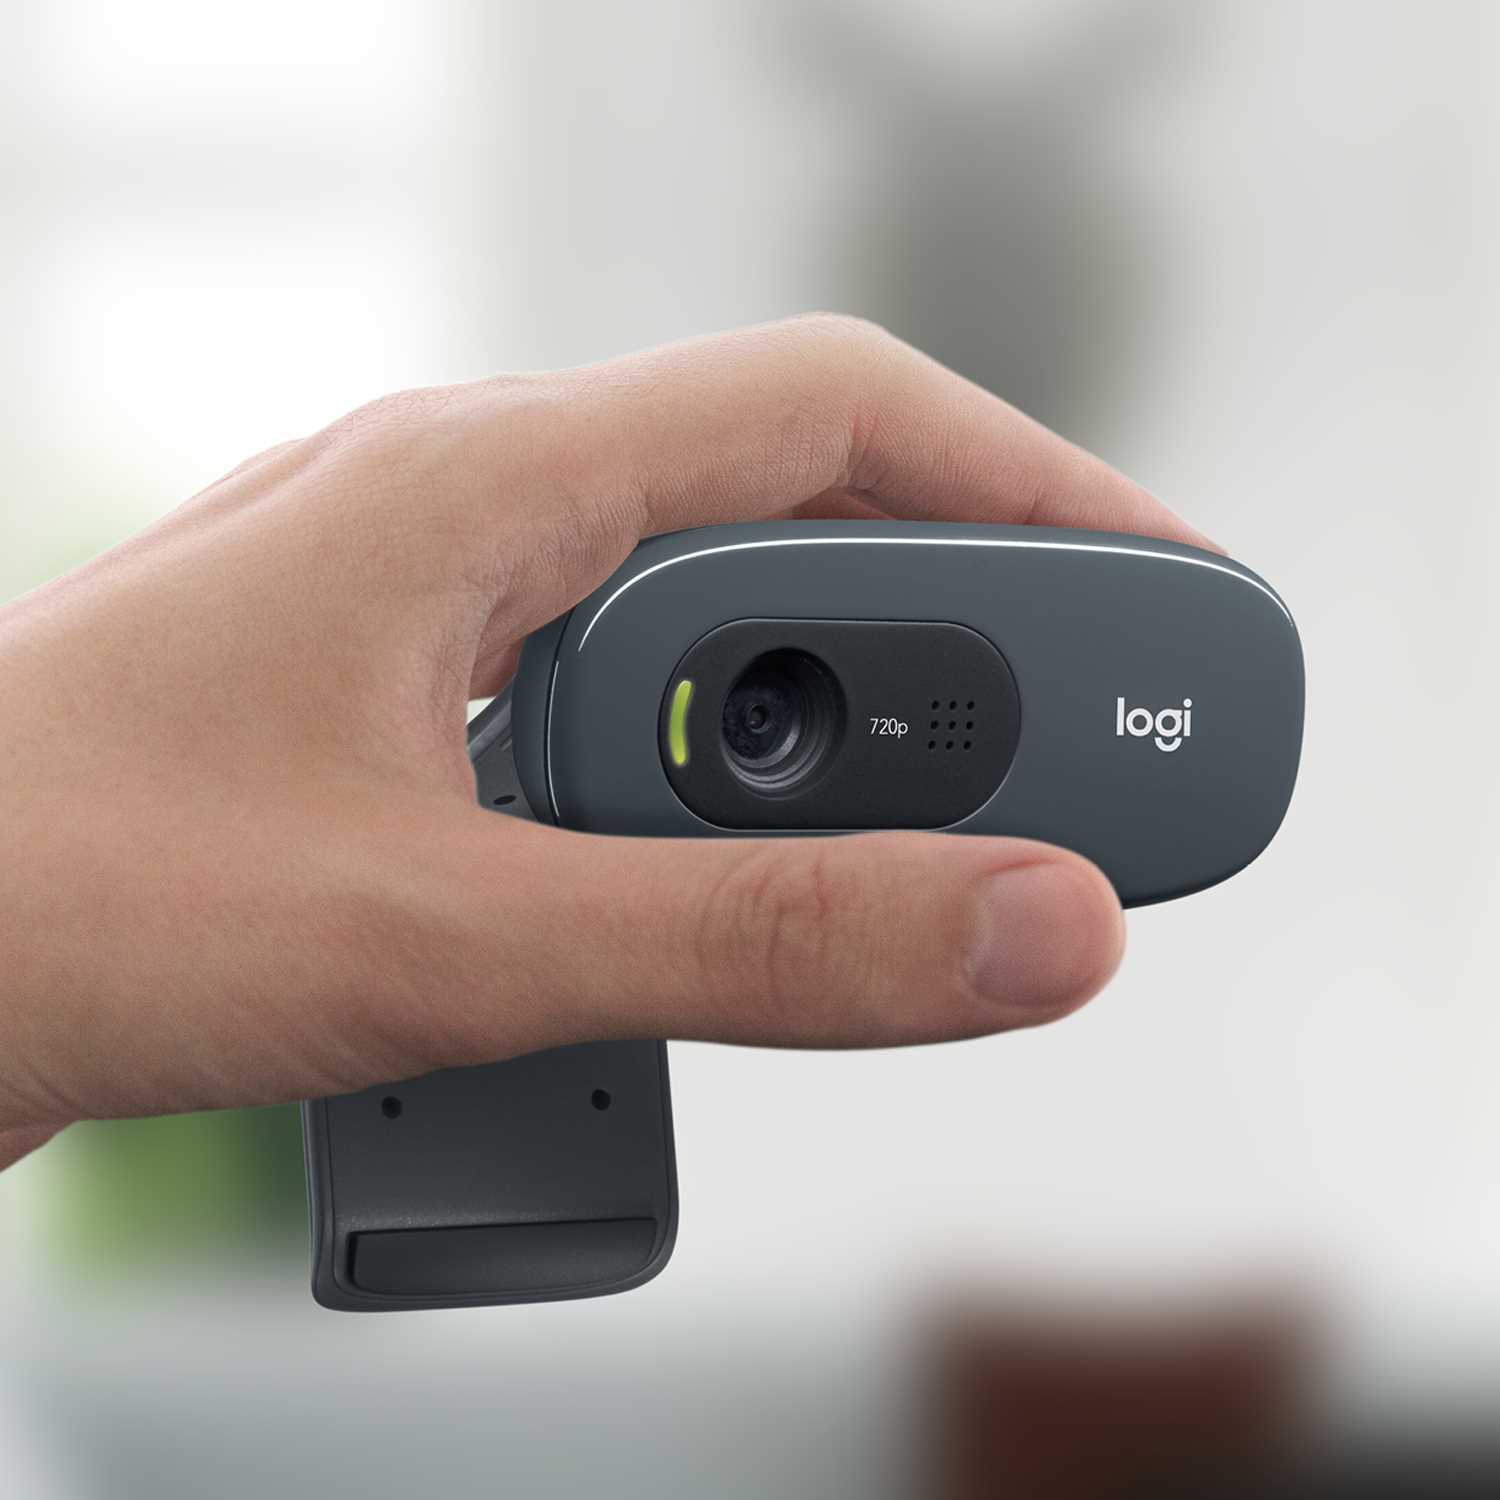 Веб-камера Logitech C270 (HD 720p/30fps, фокус постоянный, угол обзора 60°, кабель 1.5м) (арт. 960-001063, M/N: V-U0018)